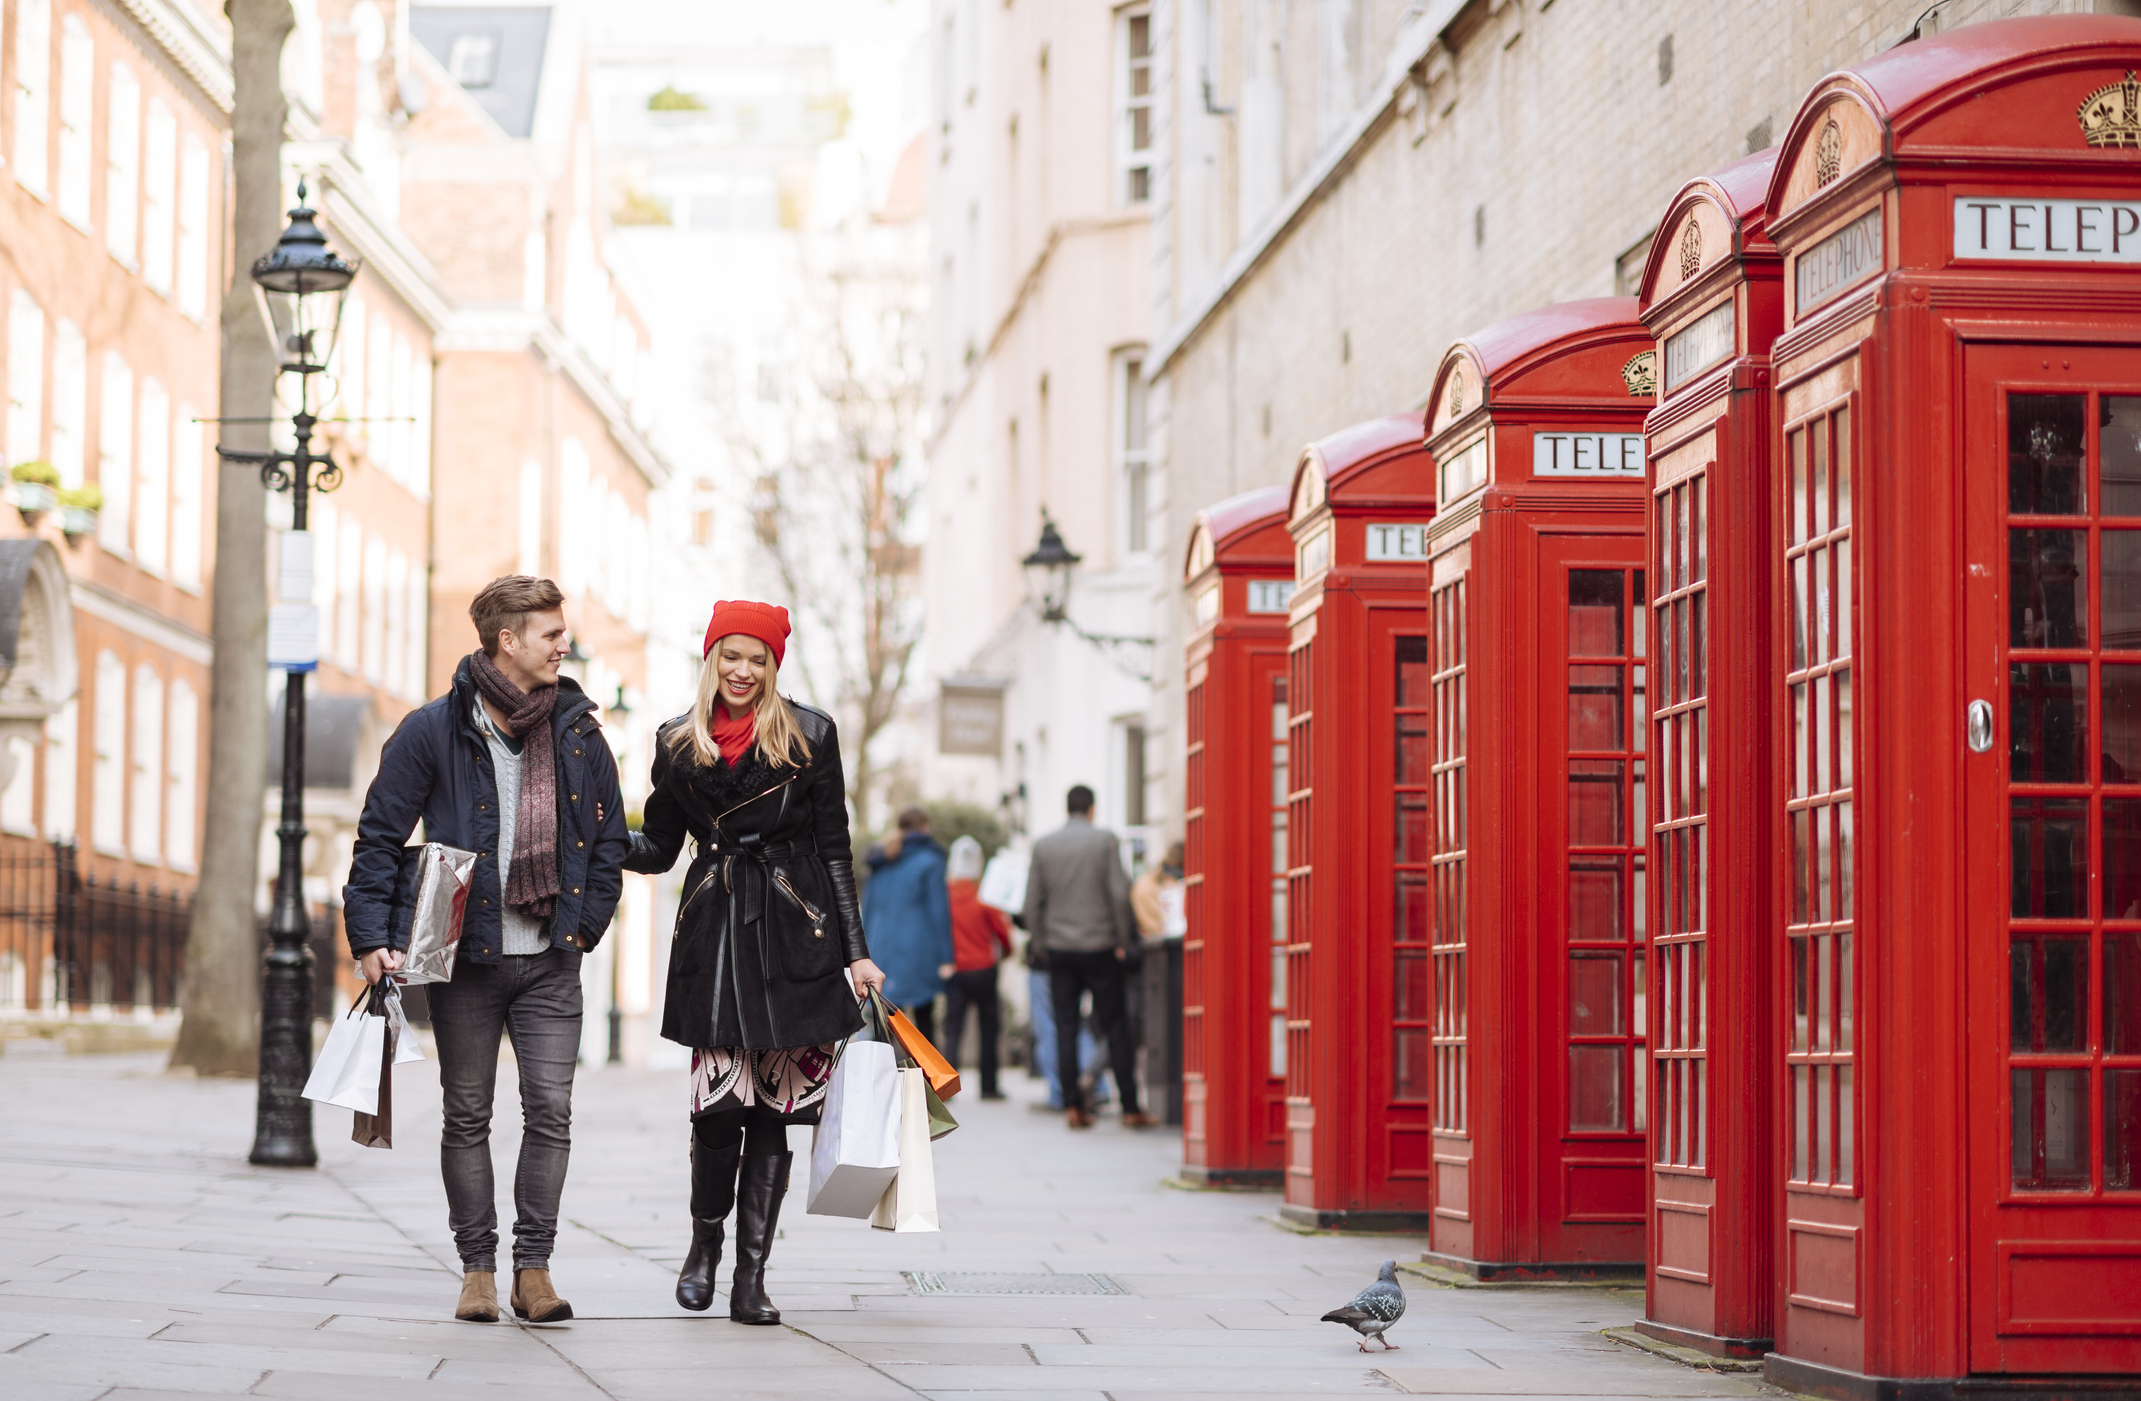 Celebrele cabine telefonice din Londra, transformate în librării, mini-cafenele sau în puncte de prim-ajutor